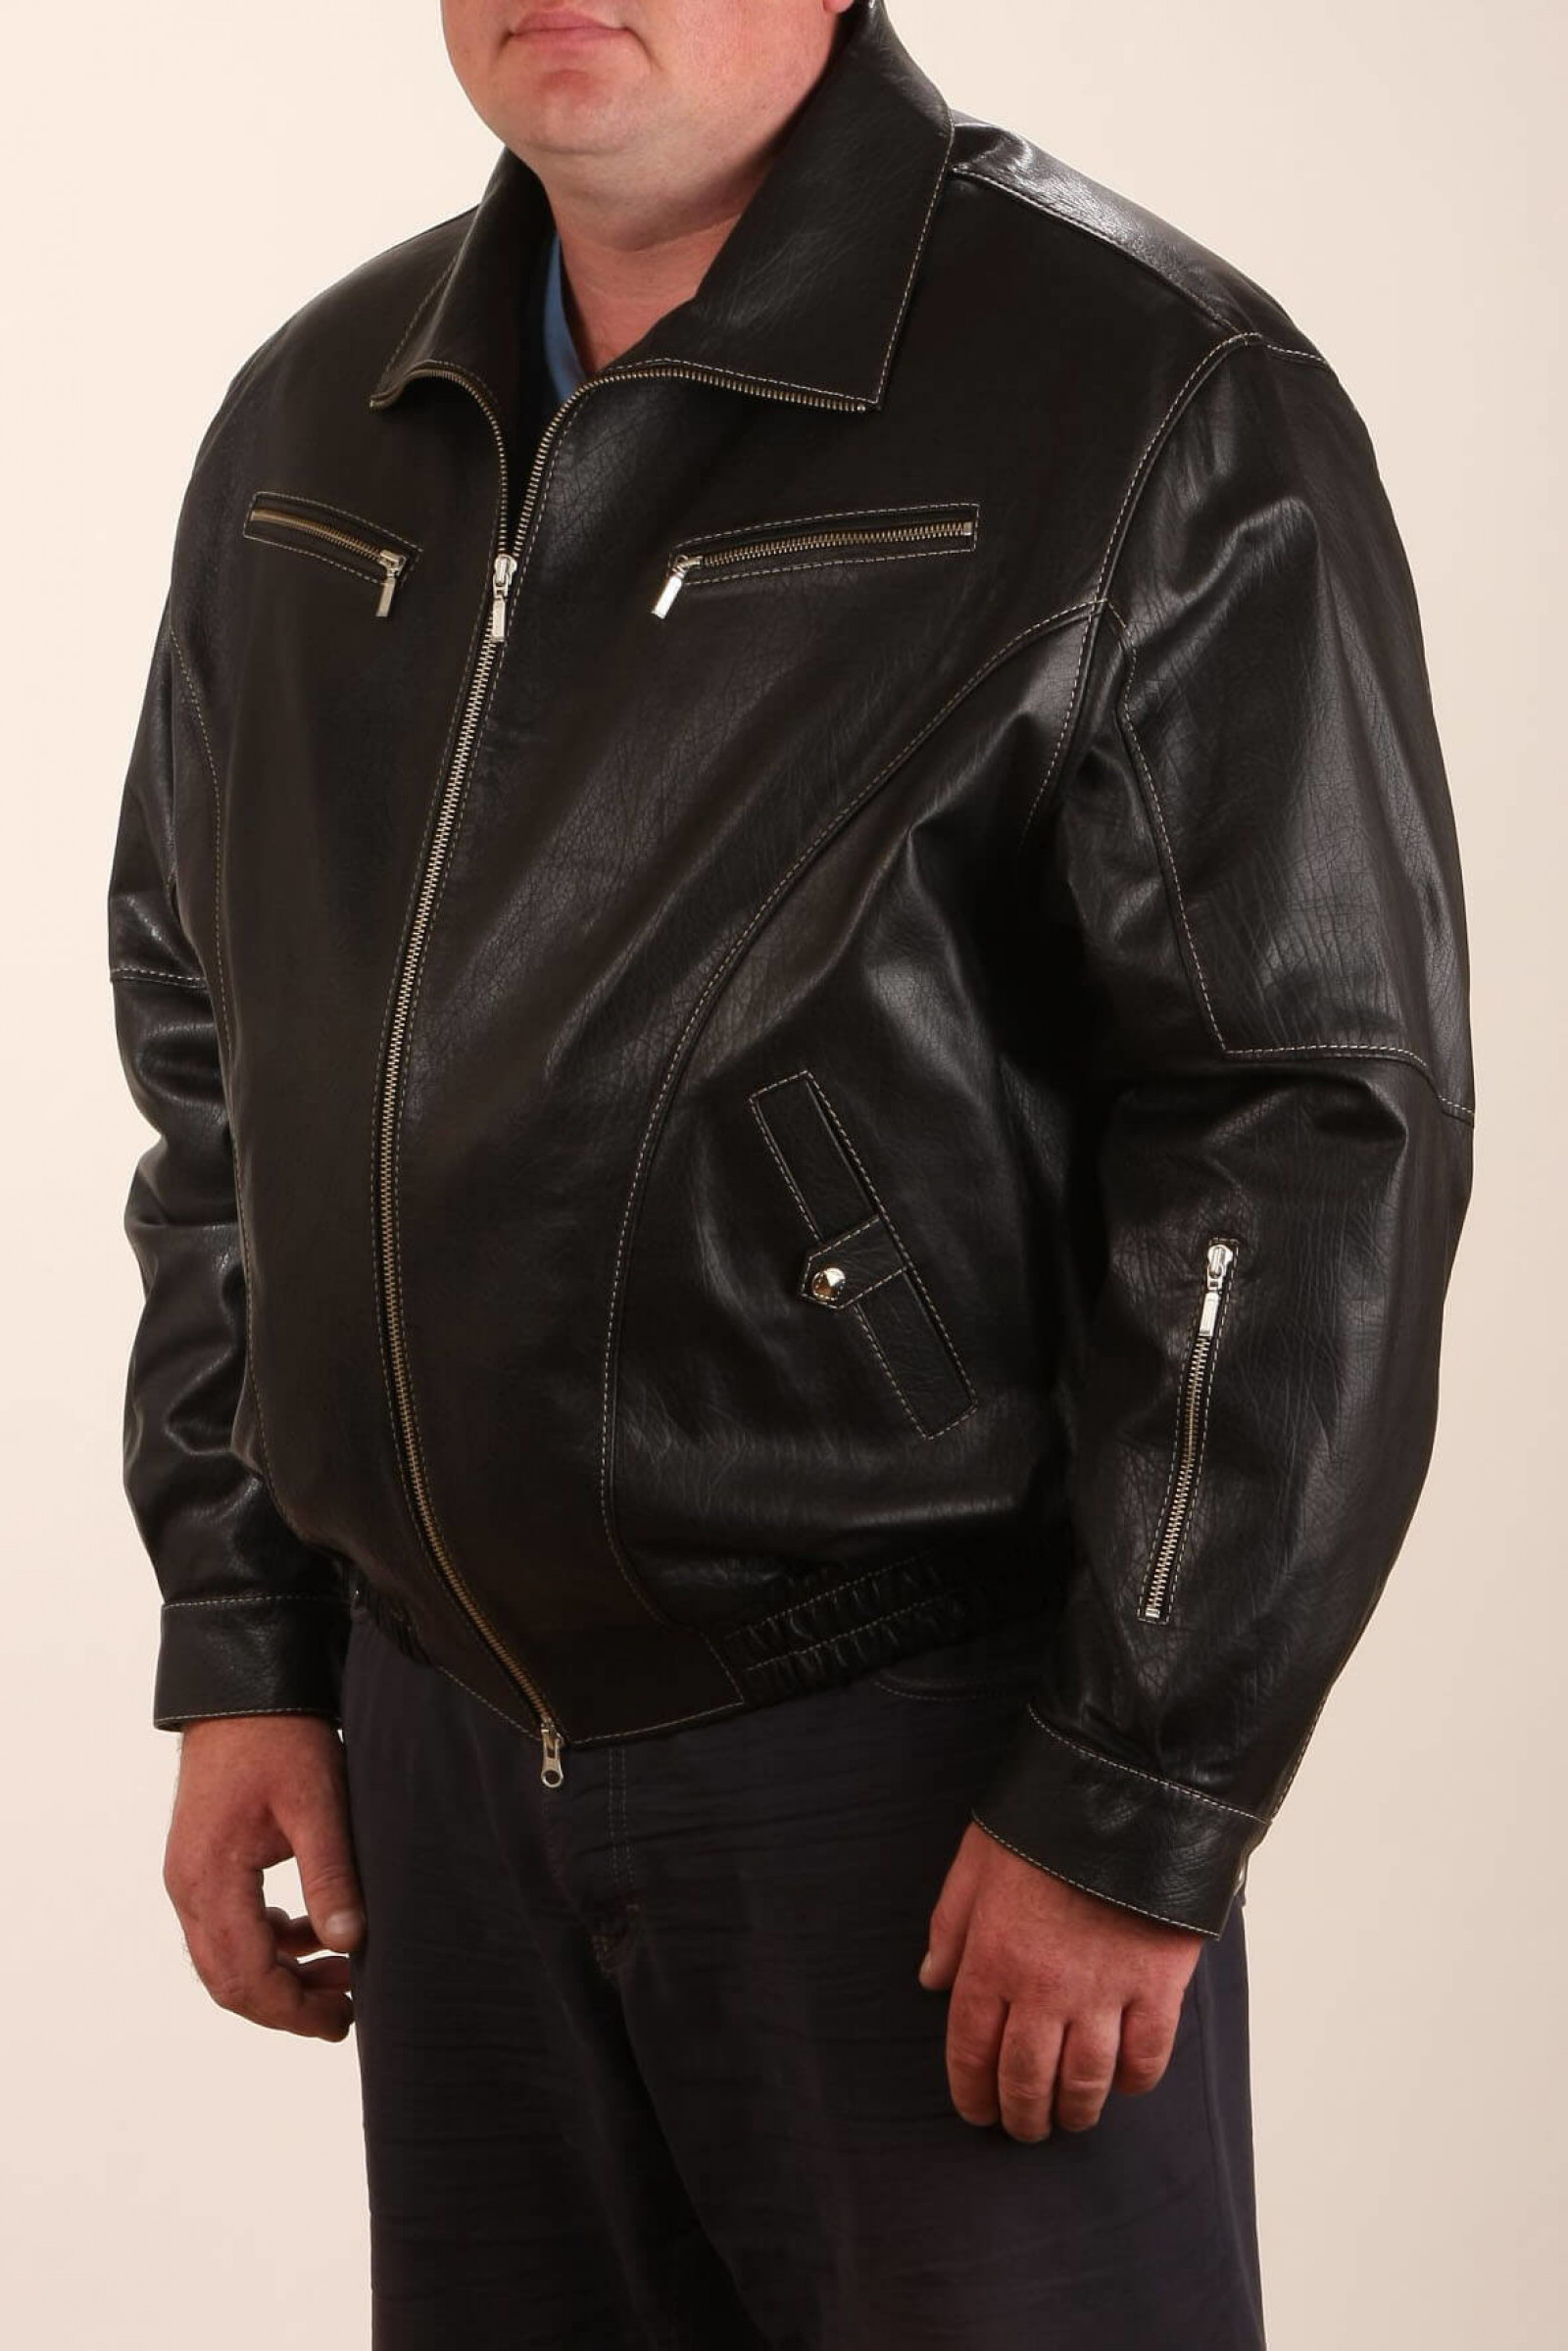 Купить кожаную куртку 54 размера. Мужская куртка-пилот Leesma. Спортивные кожаные куртки мужские. Мужчина в кожаной куртке. Куртки для полных мужчин.